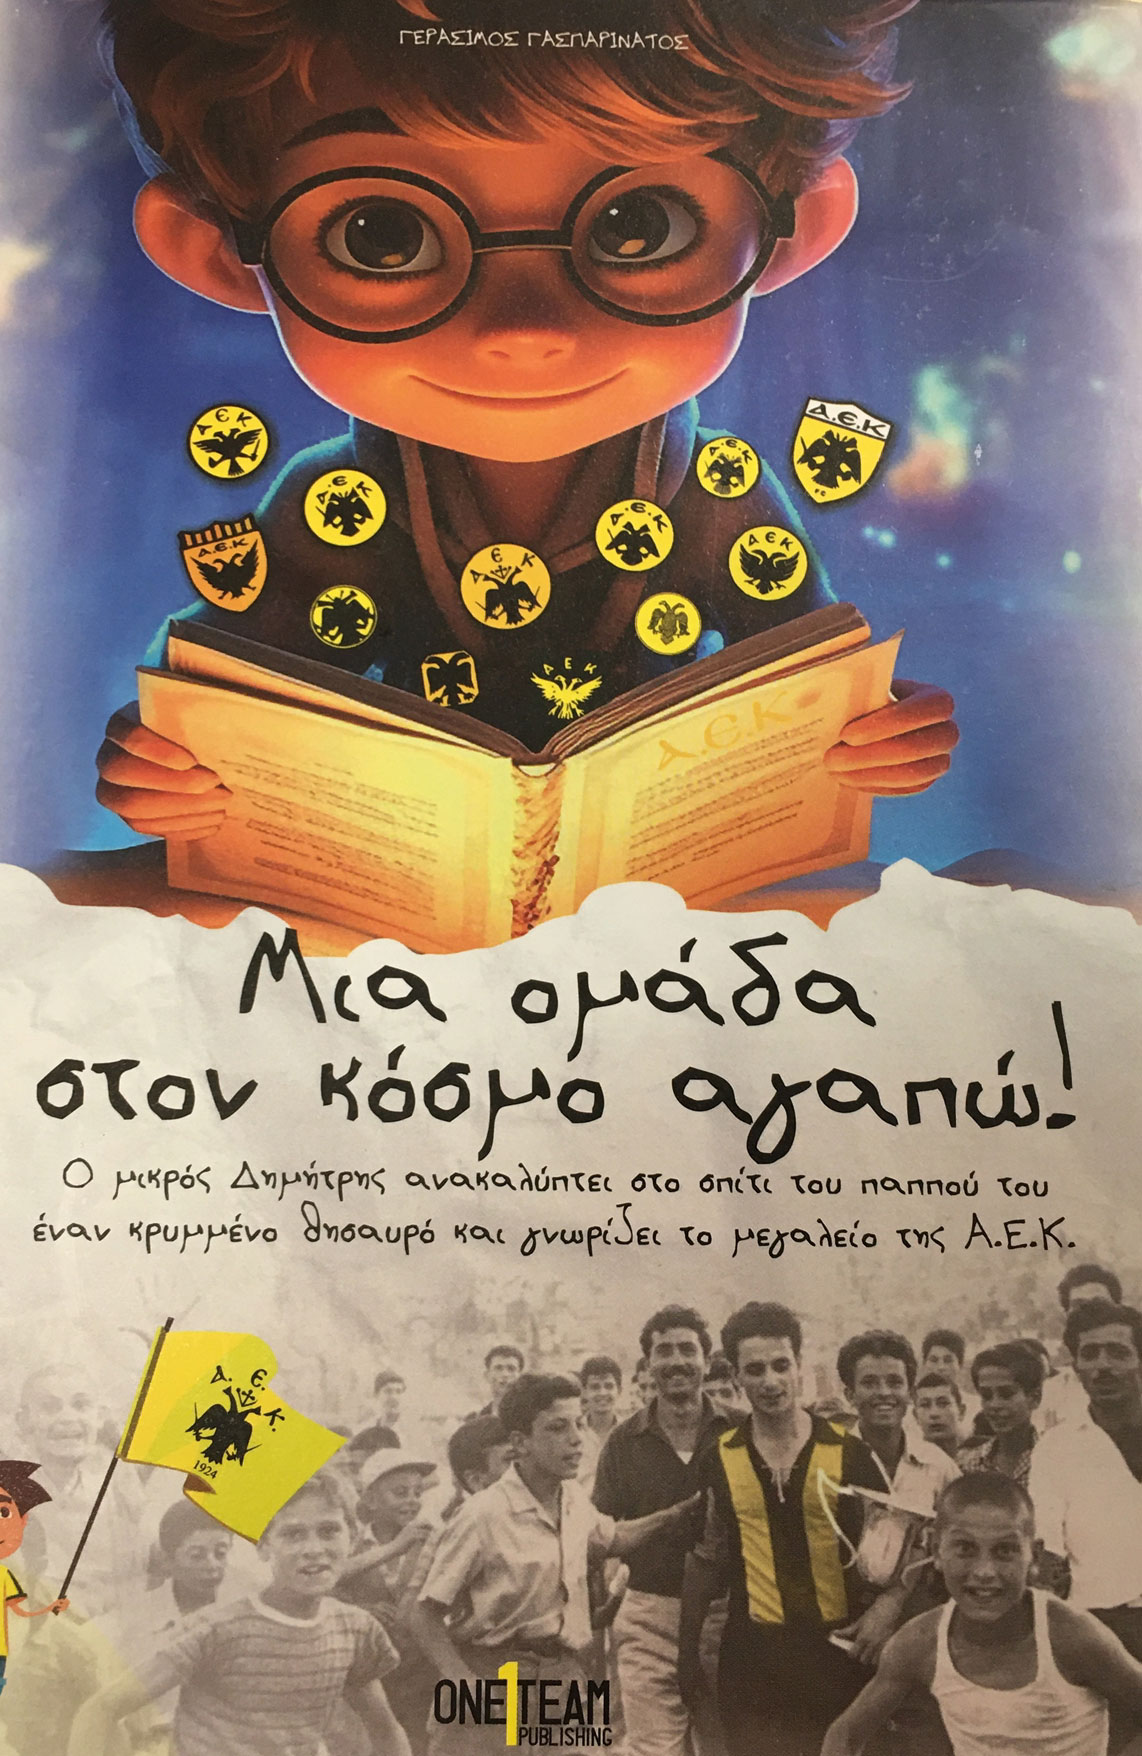 Η ιστορία της ΑΕΚ έγινε παιδικό βιβλίο - "Μία Ομάδα στον κόσμο αγαπώ" από τον Γεράσιμο Γασπαρινάτο